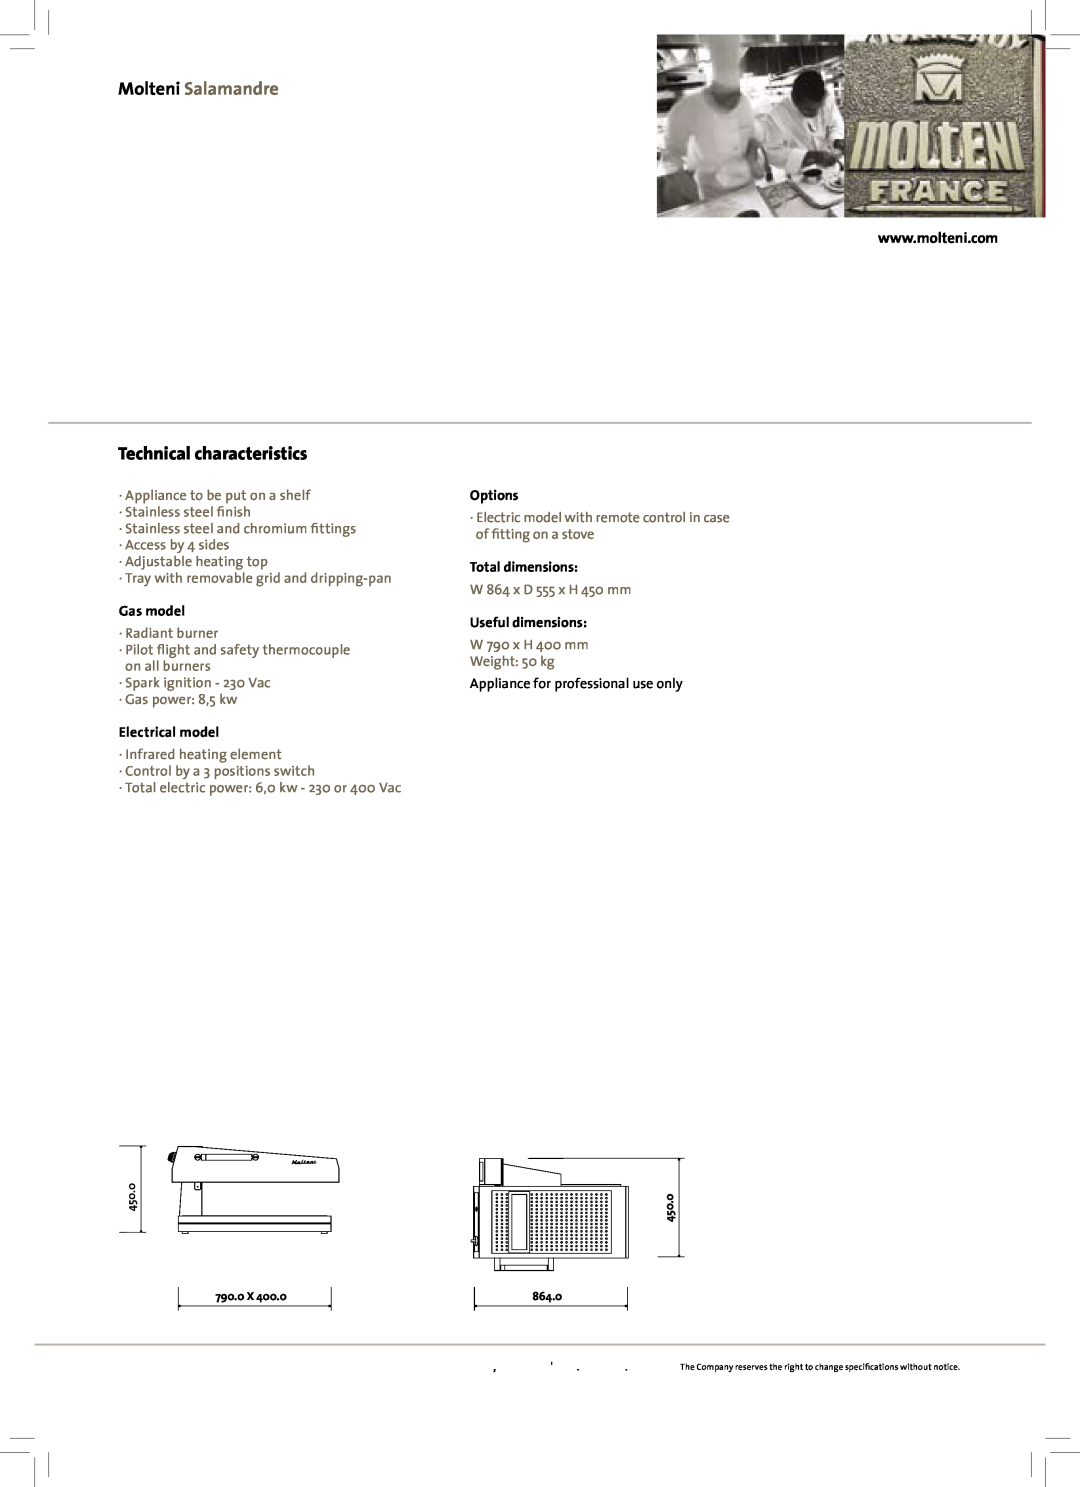 Molteni manual Molteni Salamandre, Technical characteristics, Gas model, Electrical model, Options, Total dimensions 